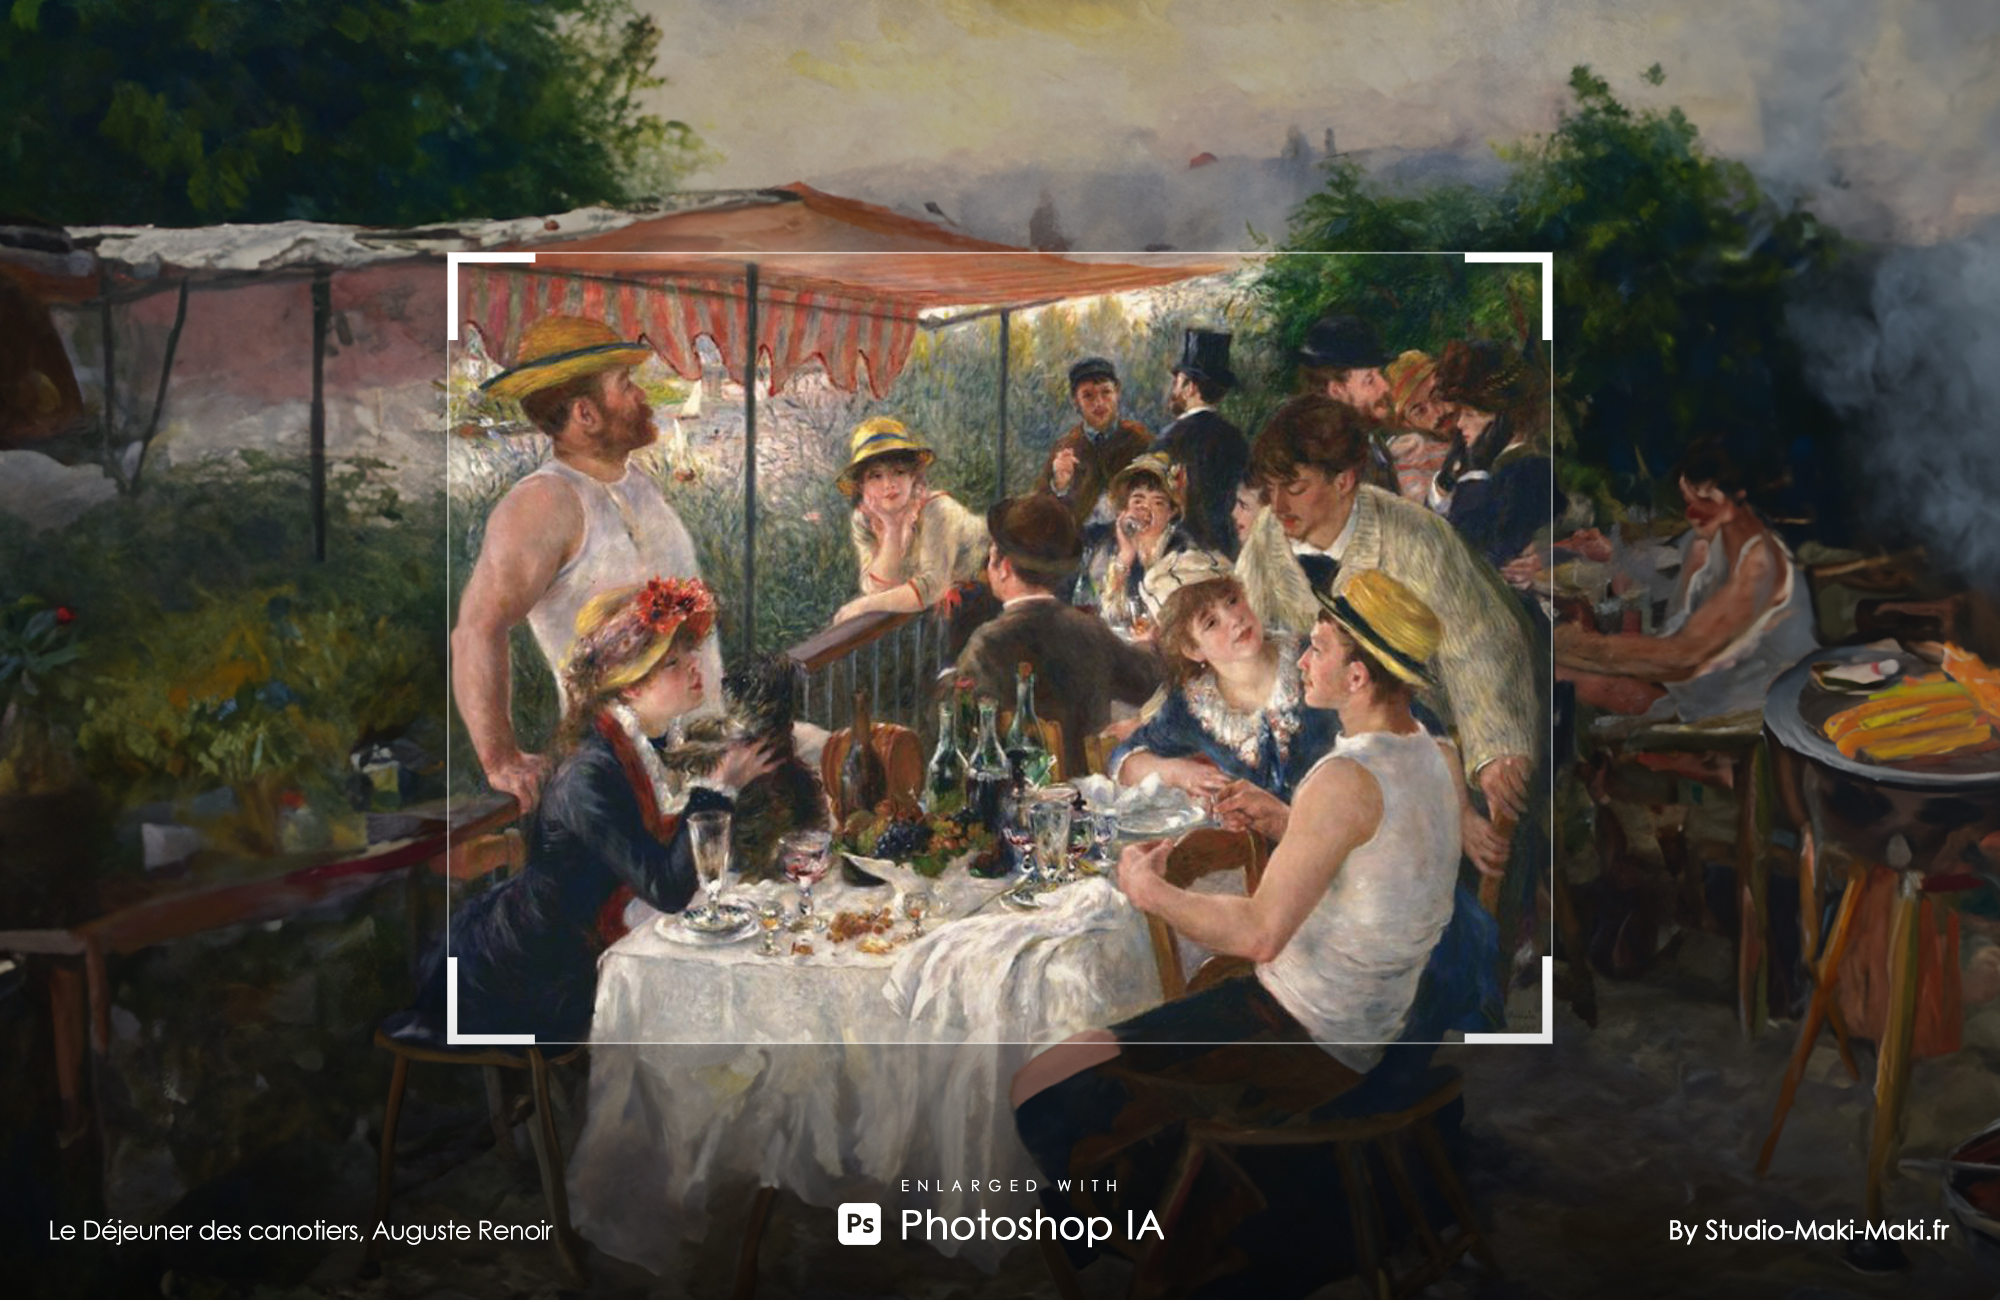 Le Déjeuner des canotiers, Auguste Renoir - Enlarged with Photoshop IA - By Studio Maki Maki